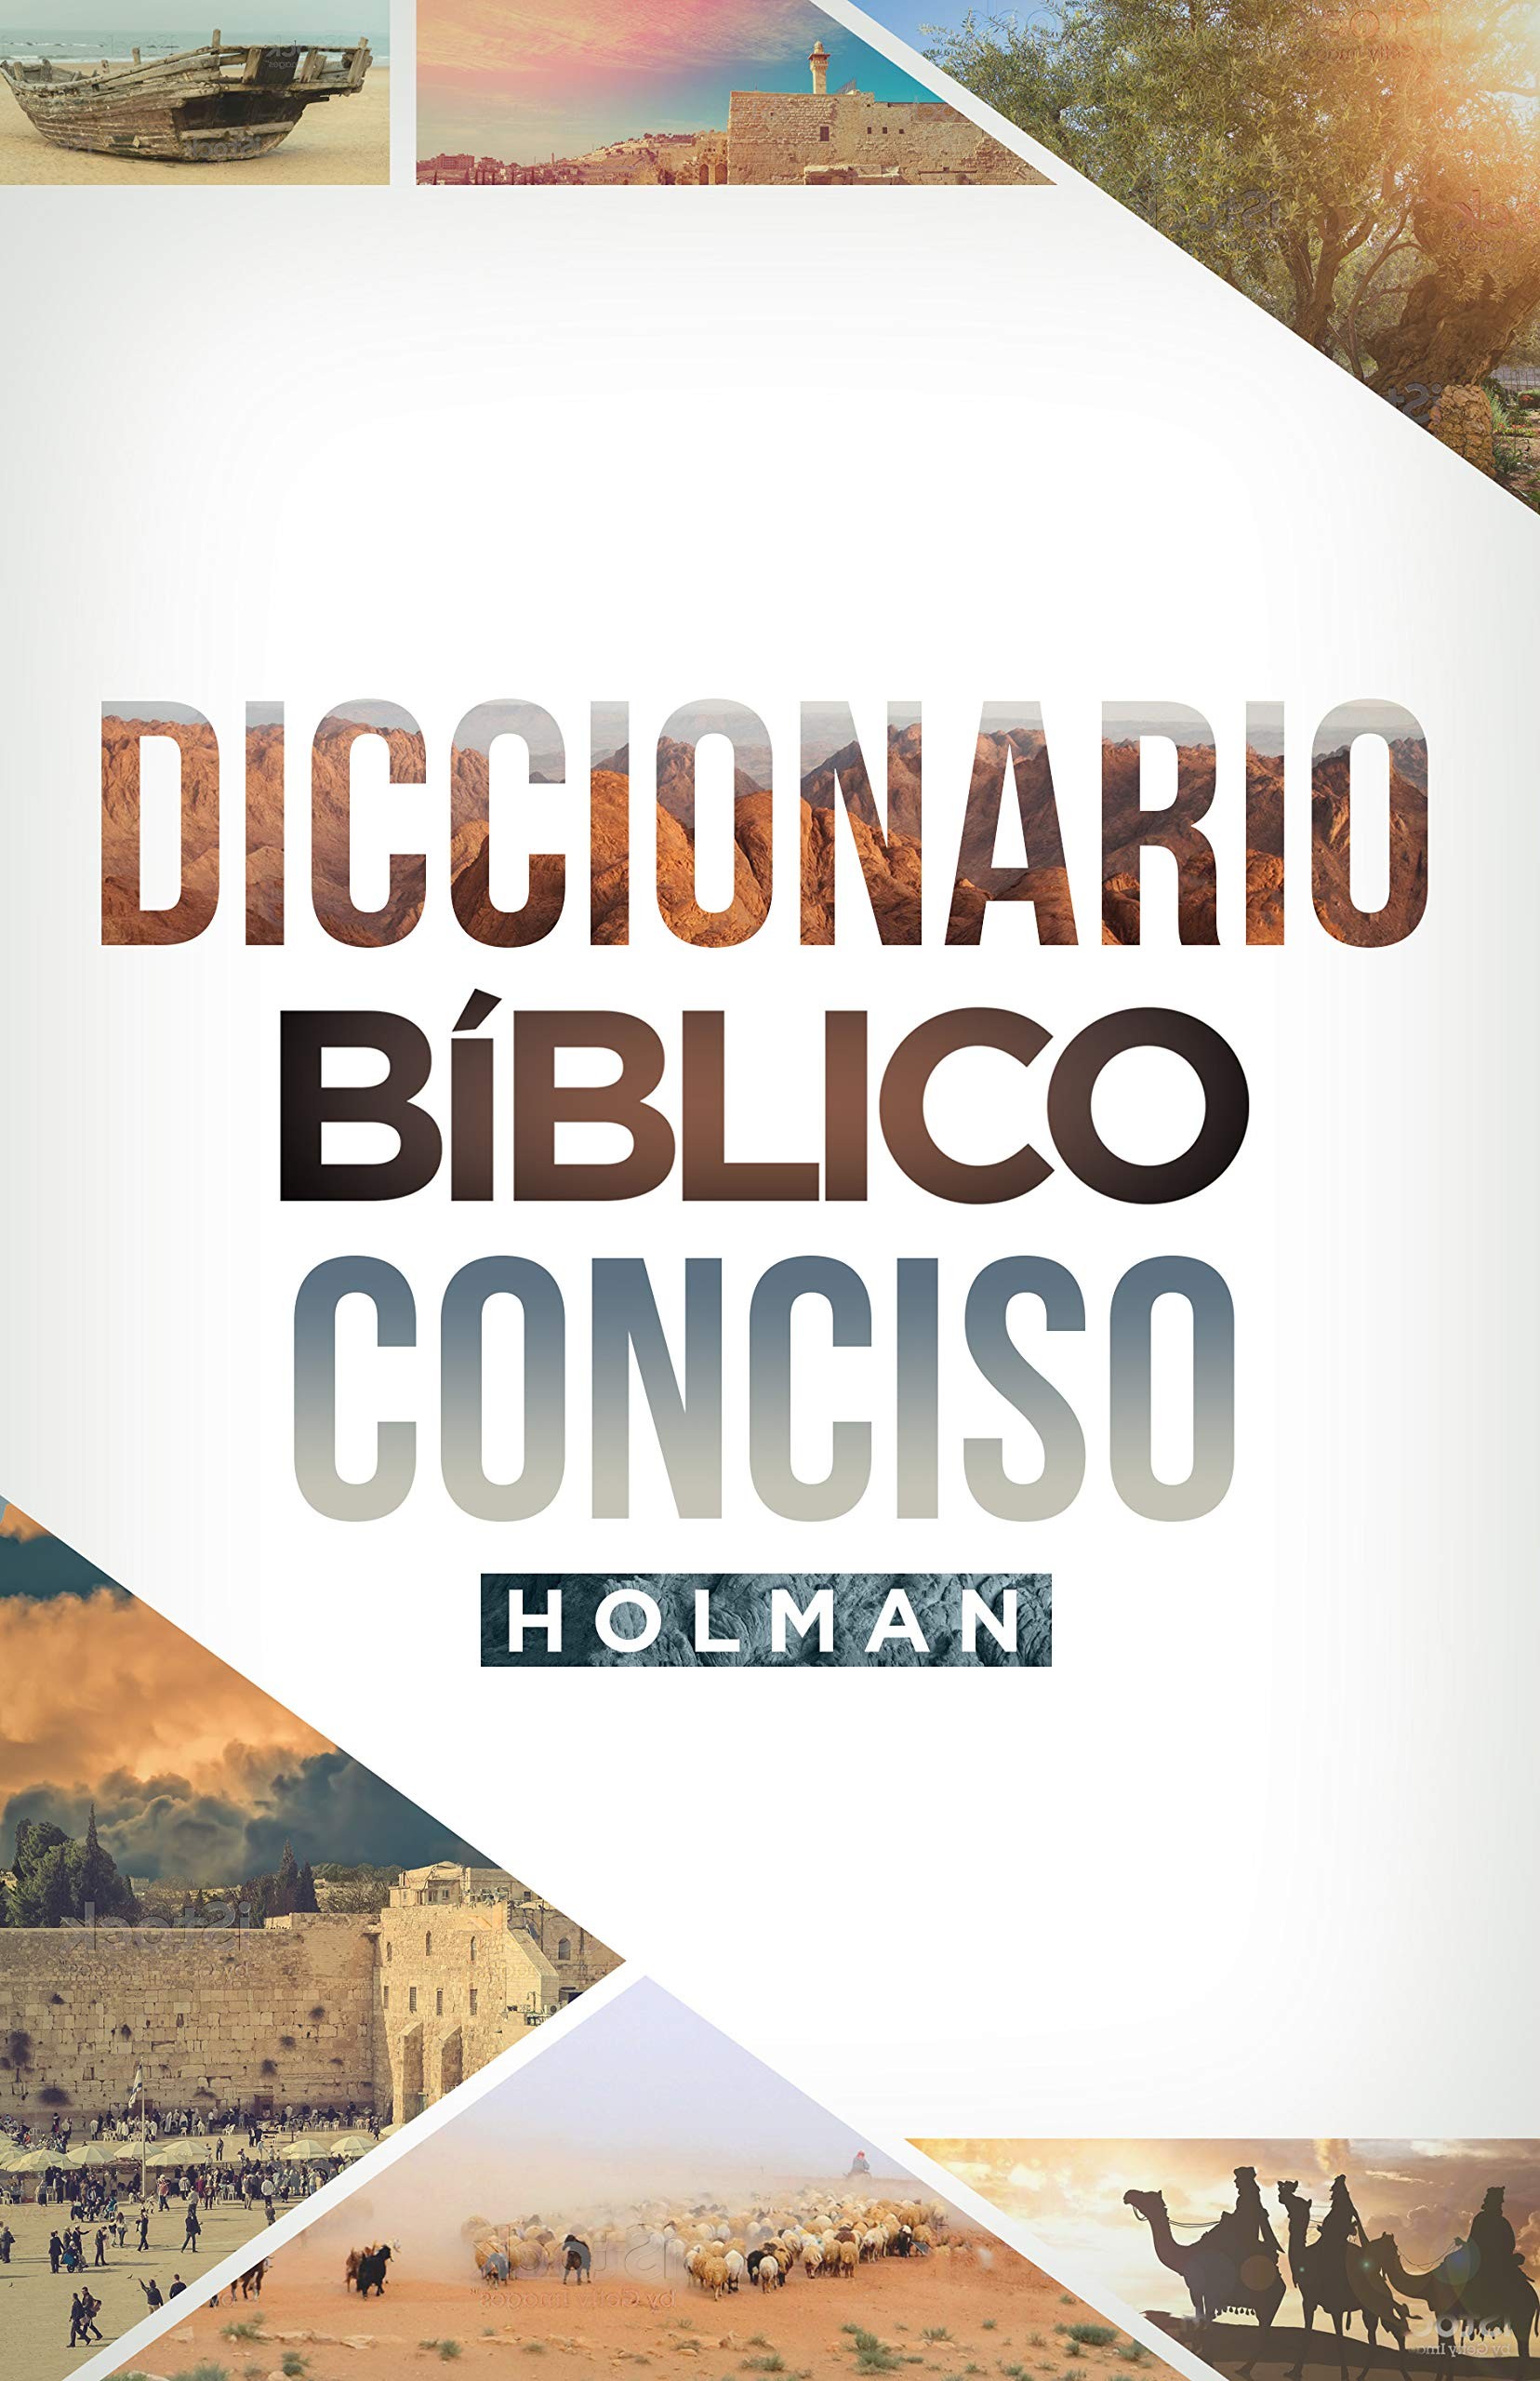 Diccionario bíblico conciso Holman